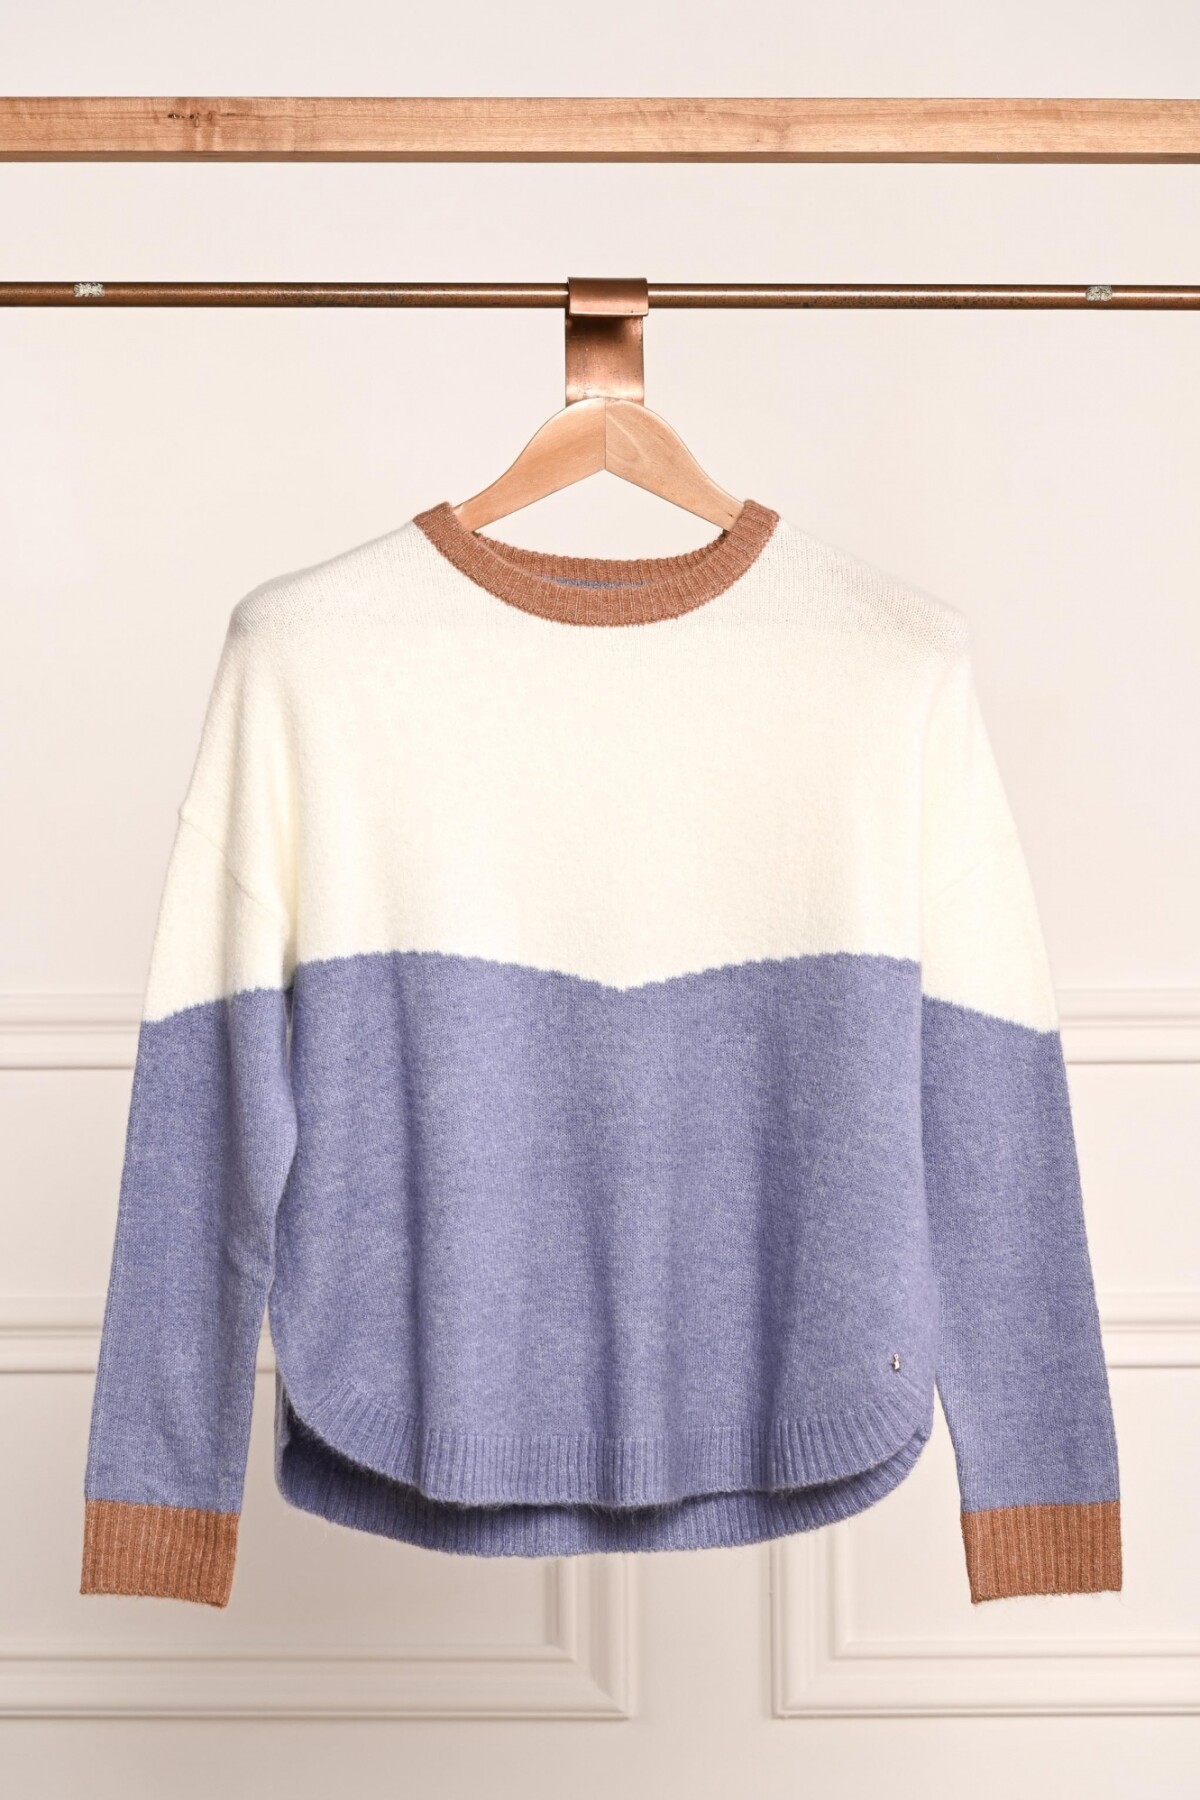 Sweater Intarsia Lila